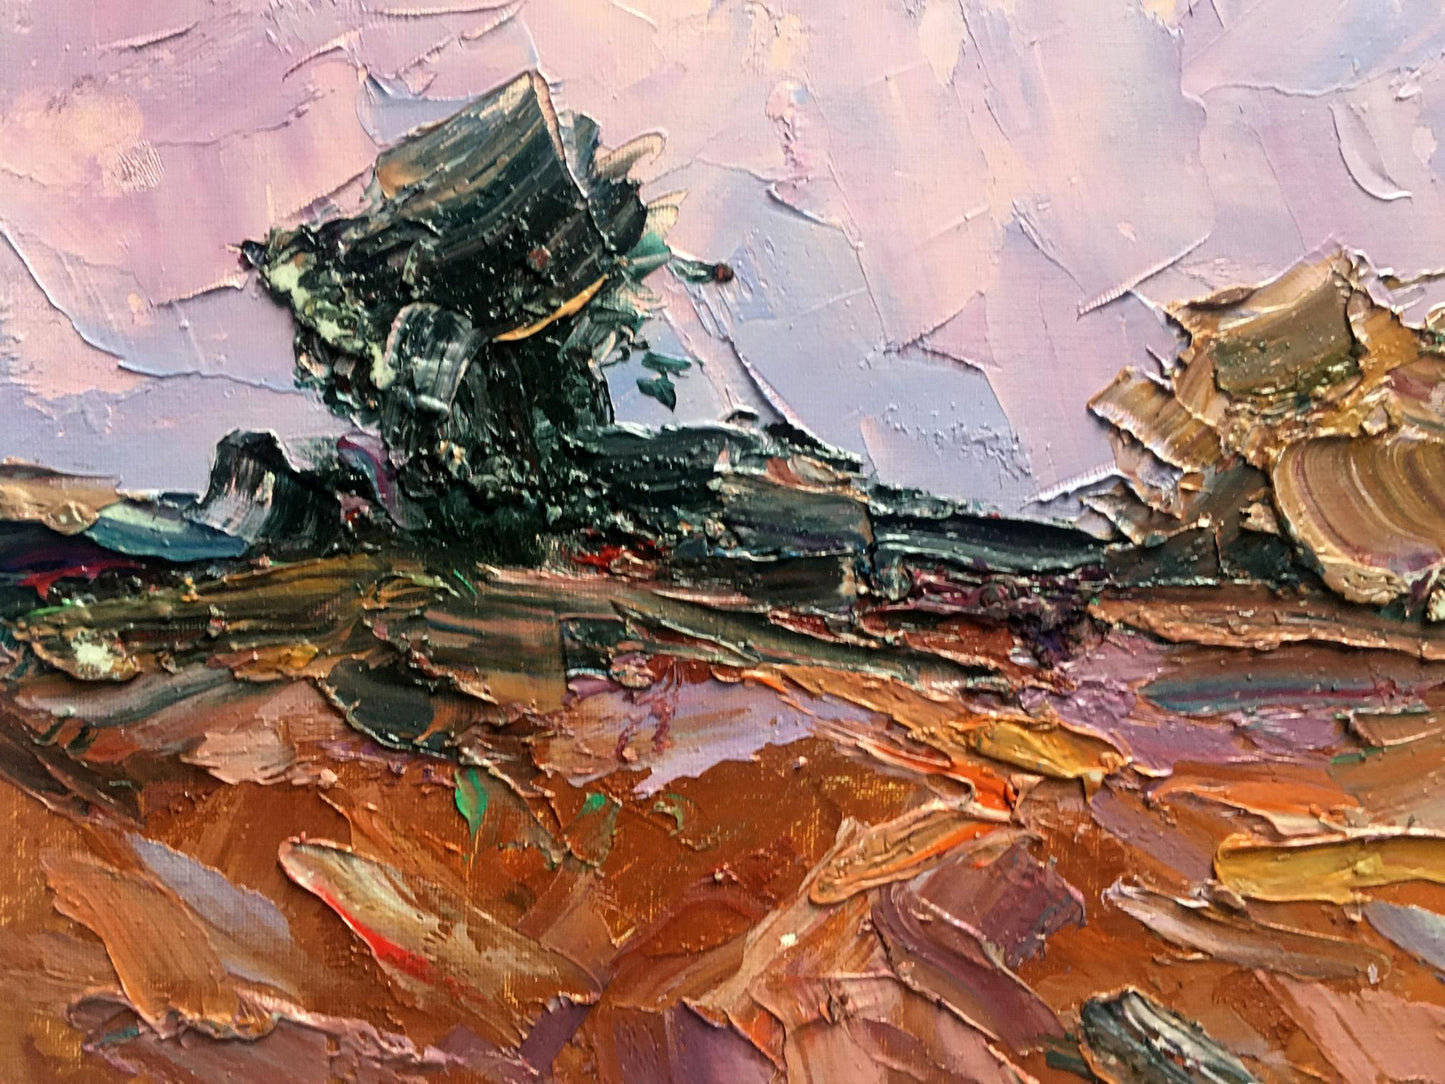 Oil painting Pink evening Alexander Nikolaevich Cherednichenko